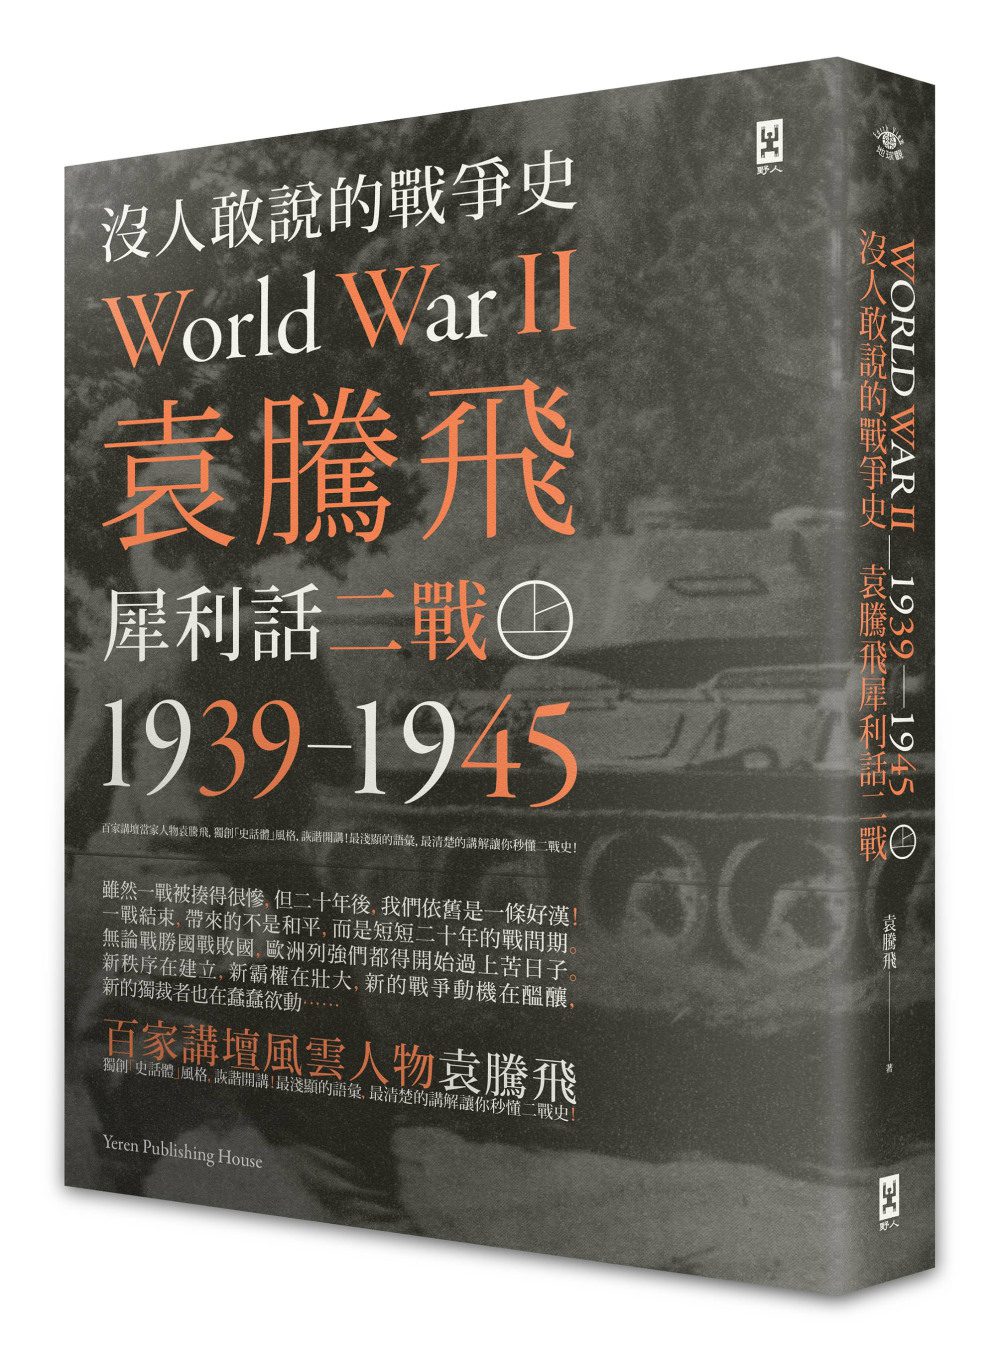 沒人敢說的戰爭史：袁騰飛犀利話二戰﹝1939-1945年﹞(上冊)